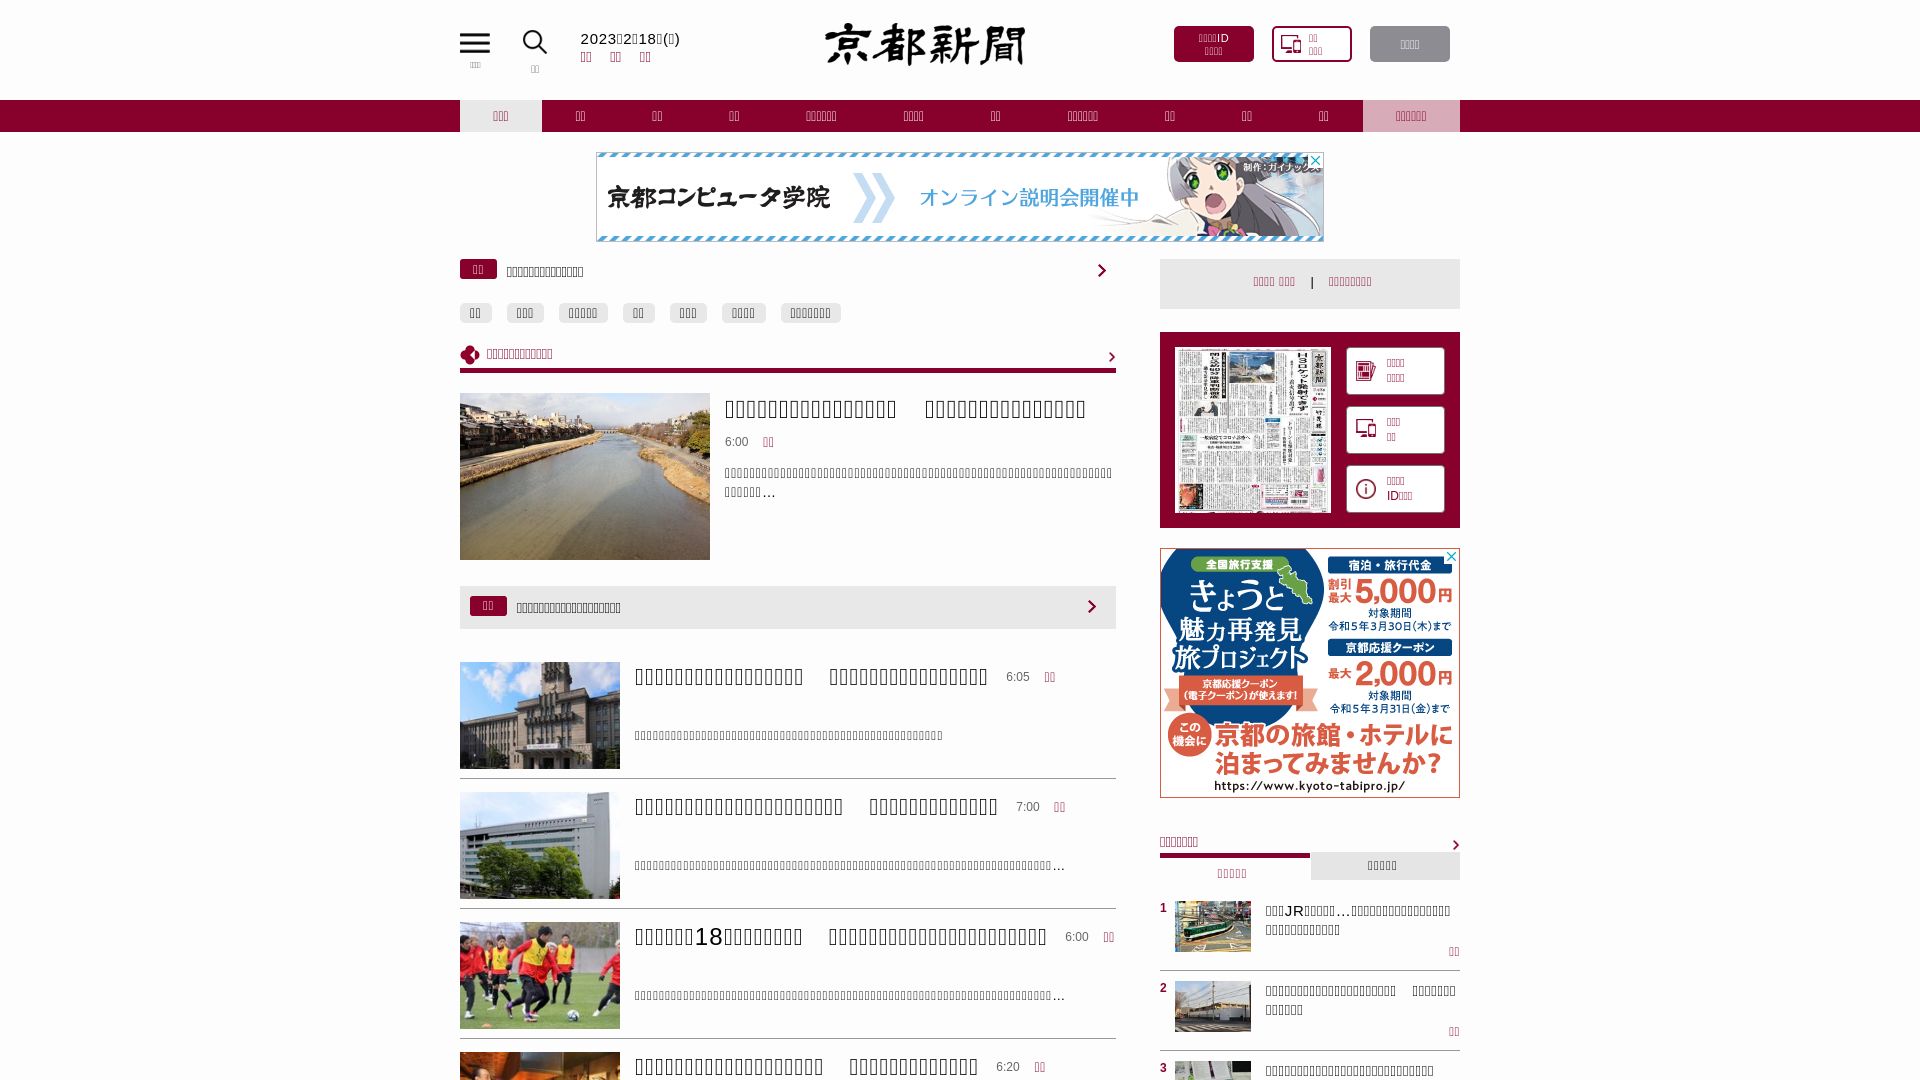 Estado web kyoto-np.co.jp está   ONLINE